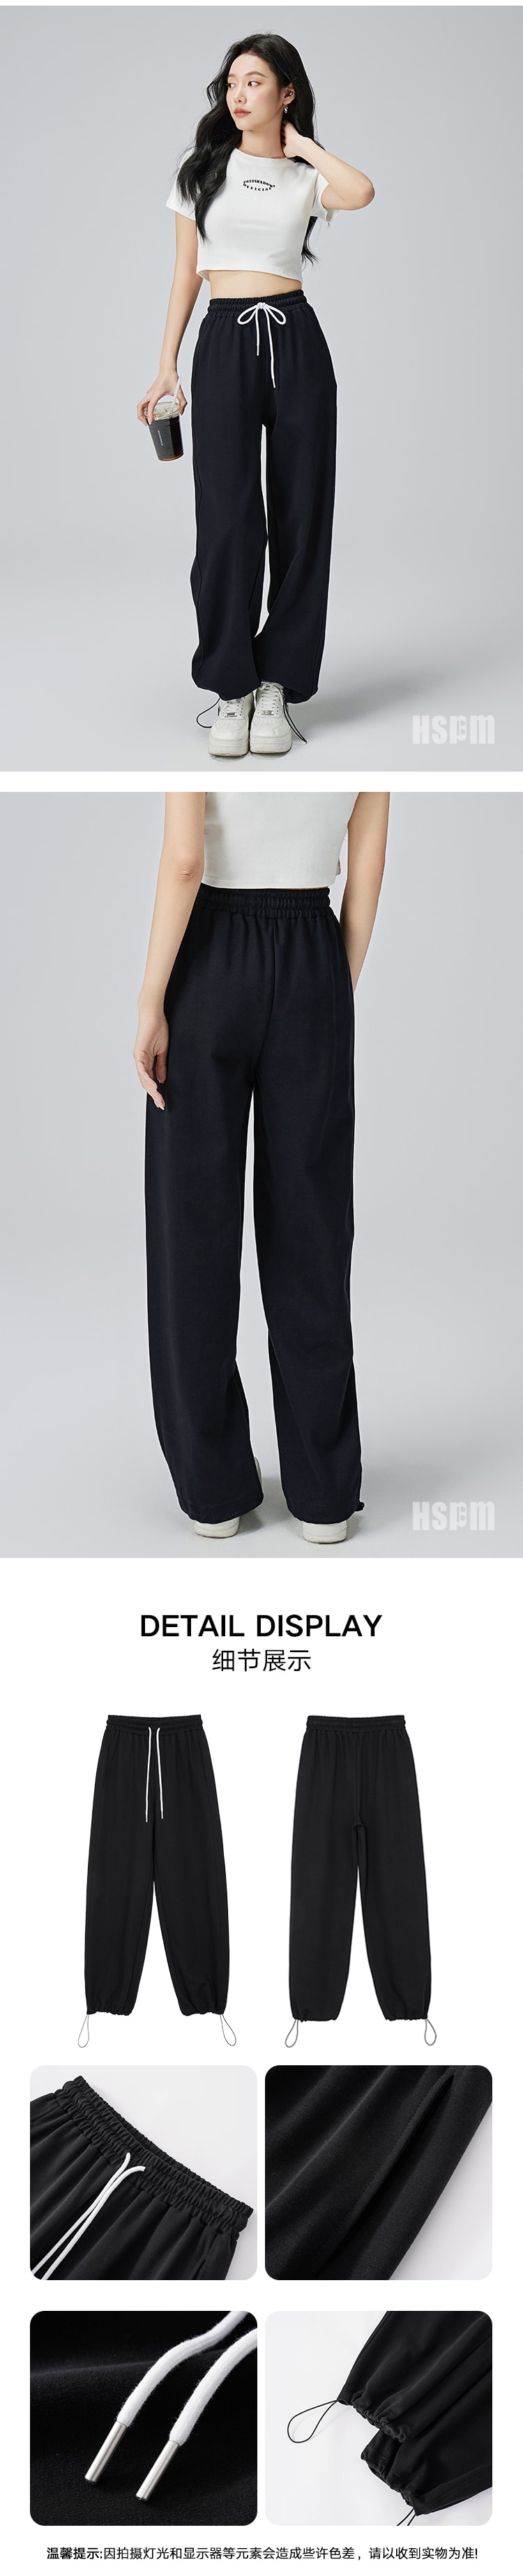 【中国直邮】HSPM 新款高腰宽松直筒抽绳休闲裤 黑色 S